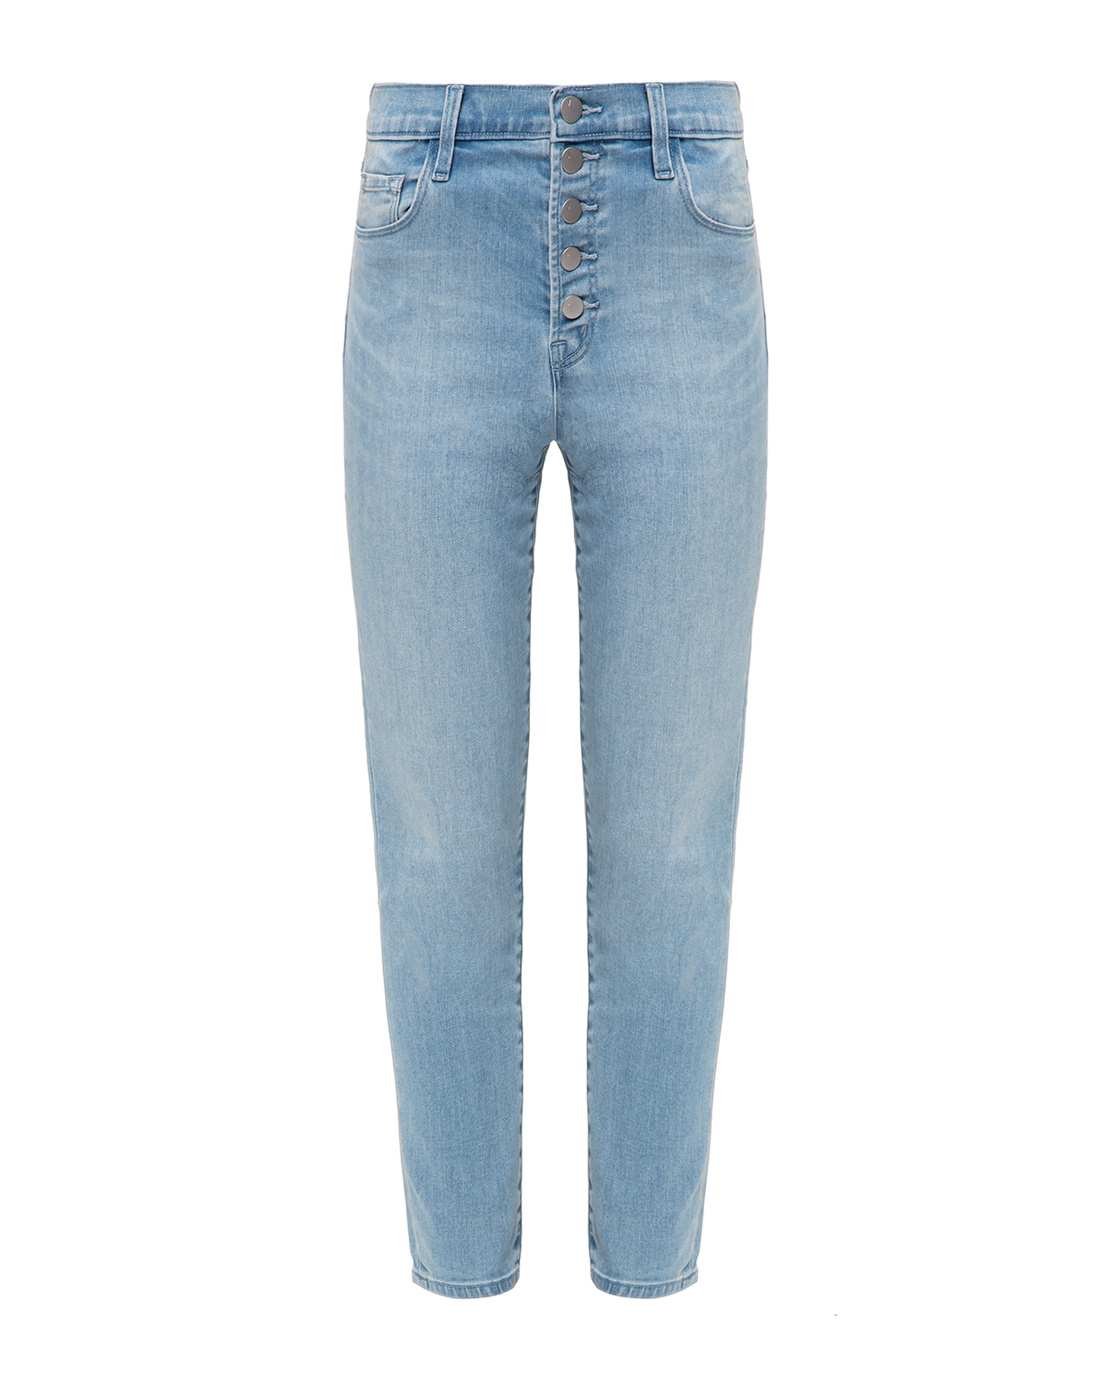 Женские голубые джинсы J BRAND SJB002135-1